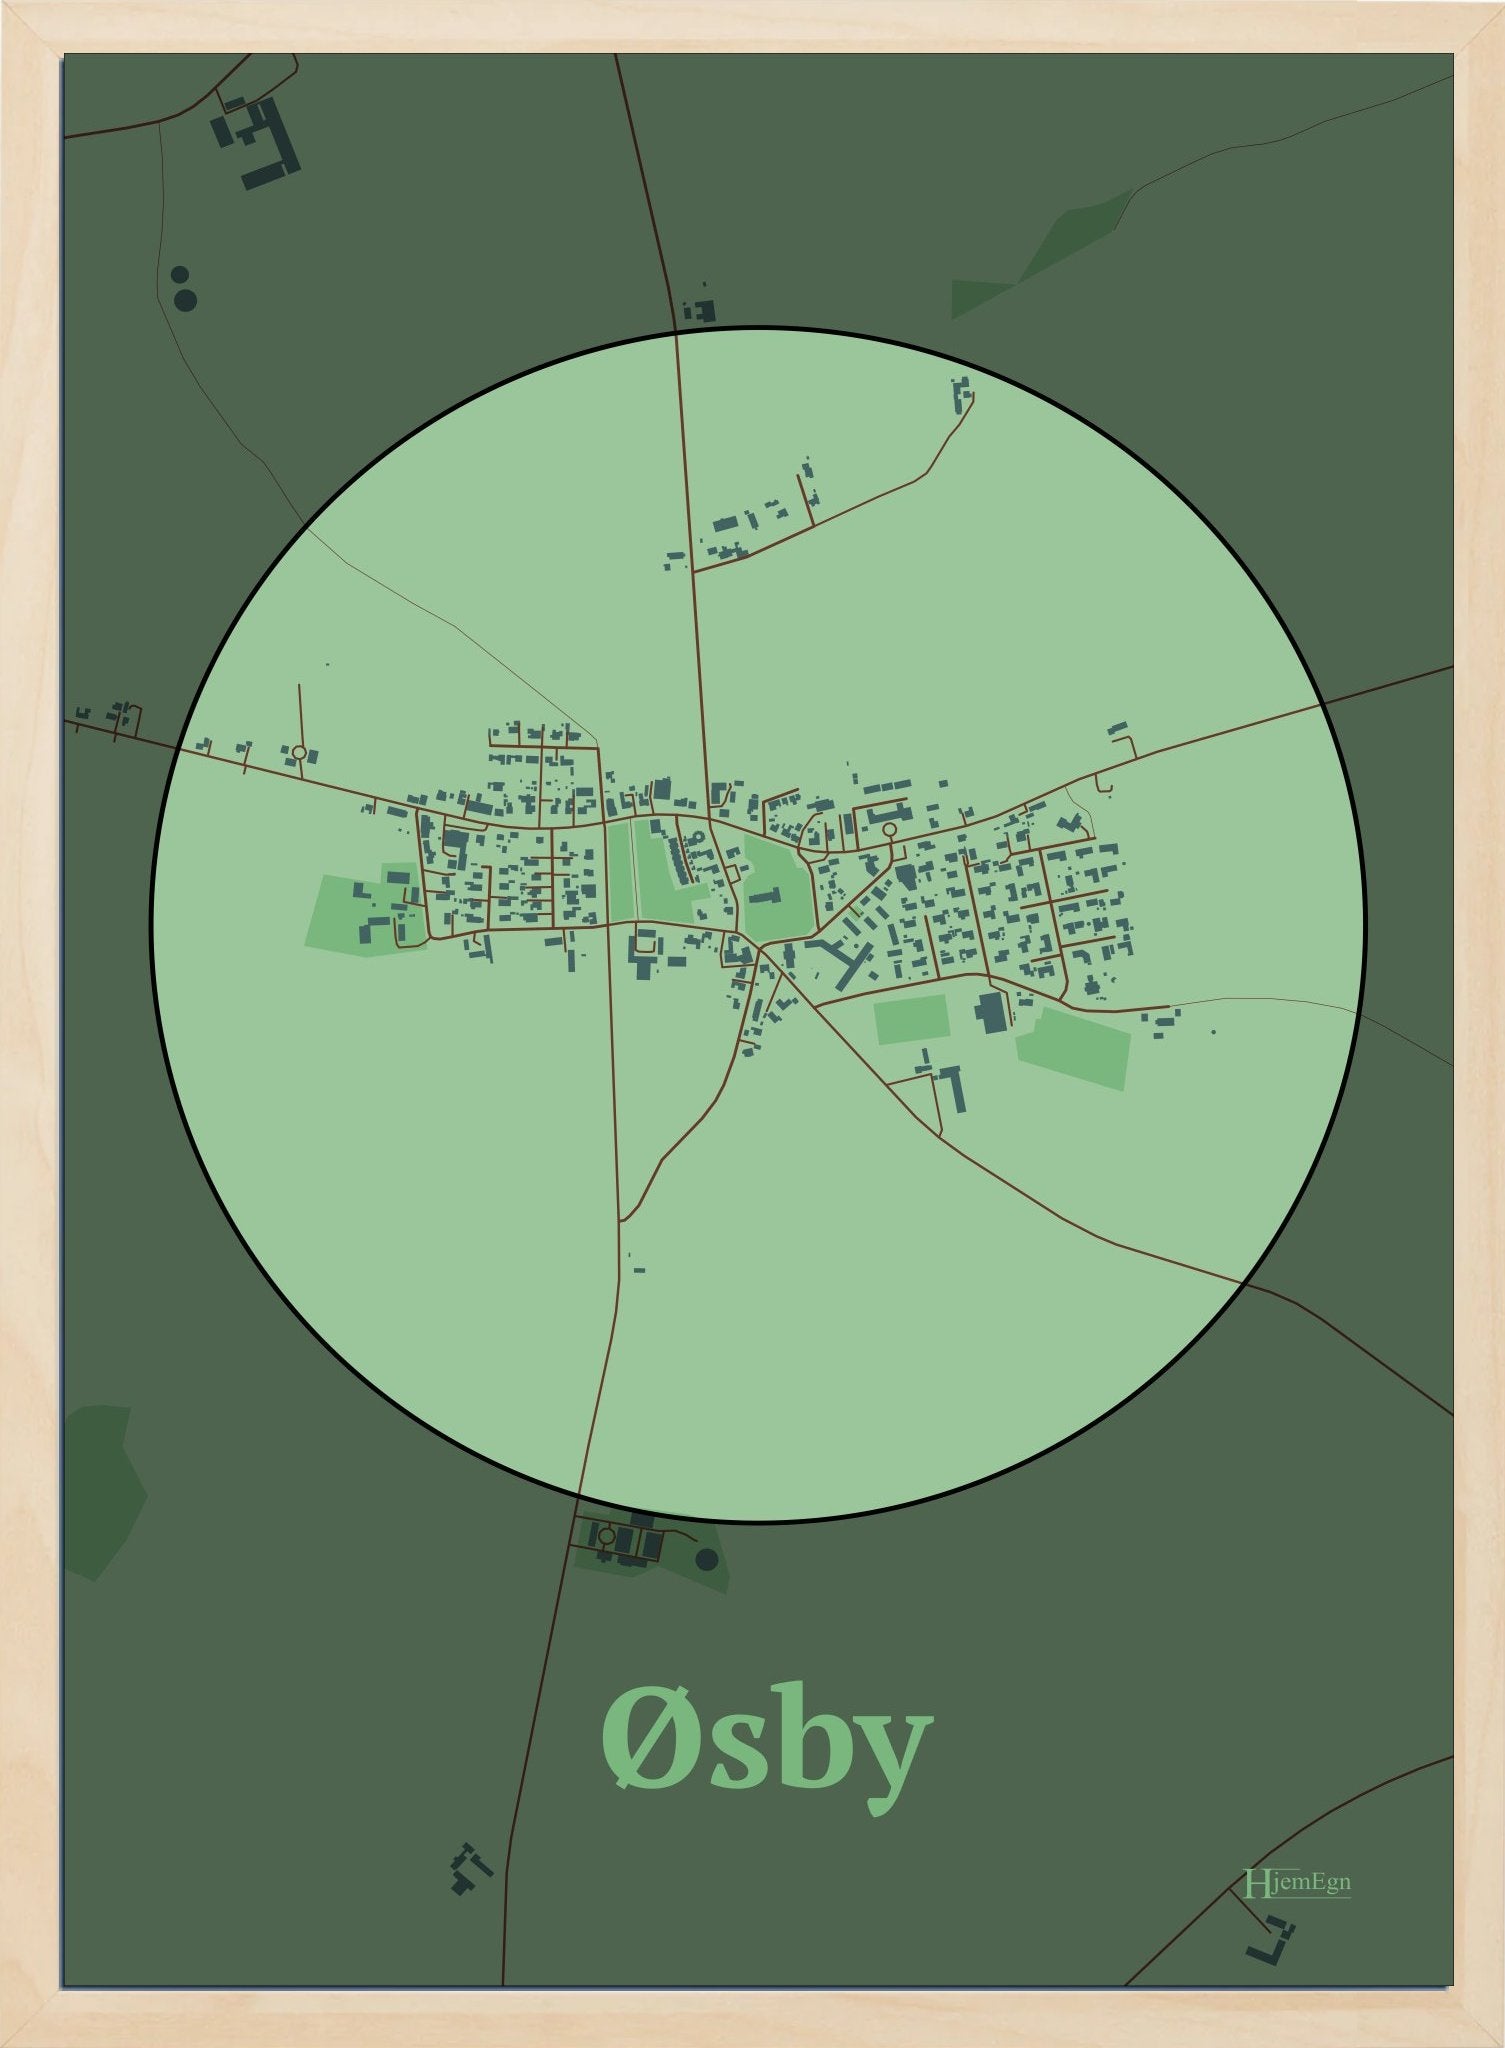 Øsby plakat i farve pastel grøn og HjemEgn.dk design centrum. Design bykort for Øsby